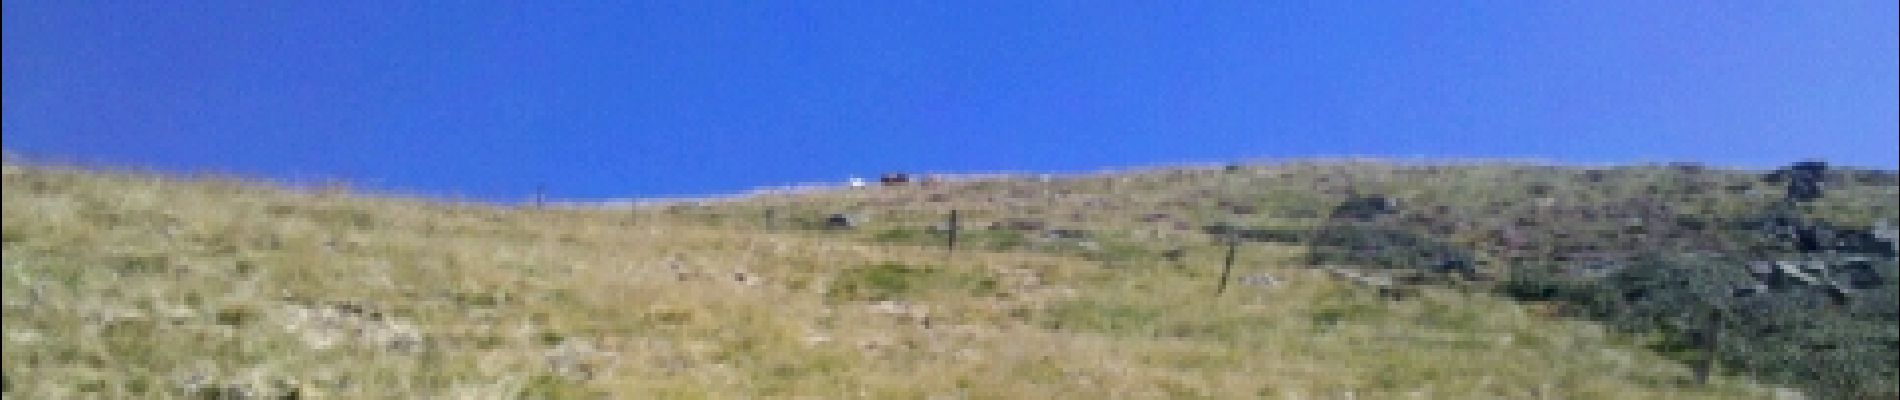 POI Sentenac-d'Oust - 02 - Plus très loin du sommet, un petit groupe de chèvres - Photo